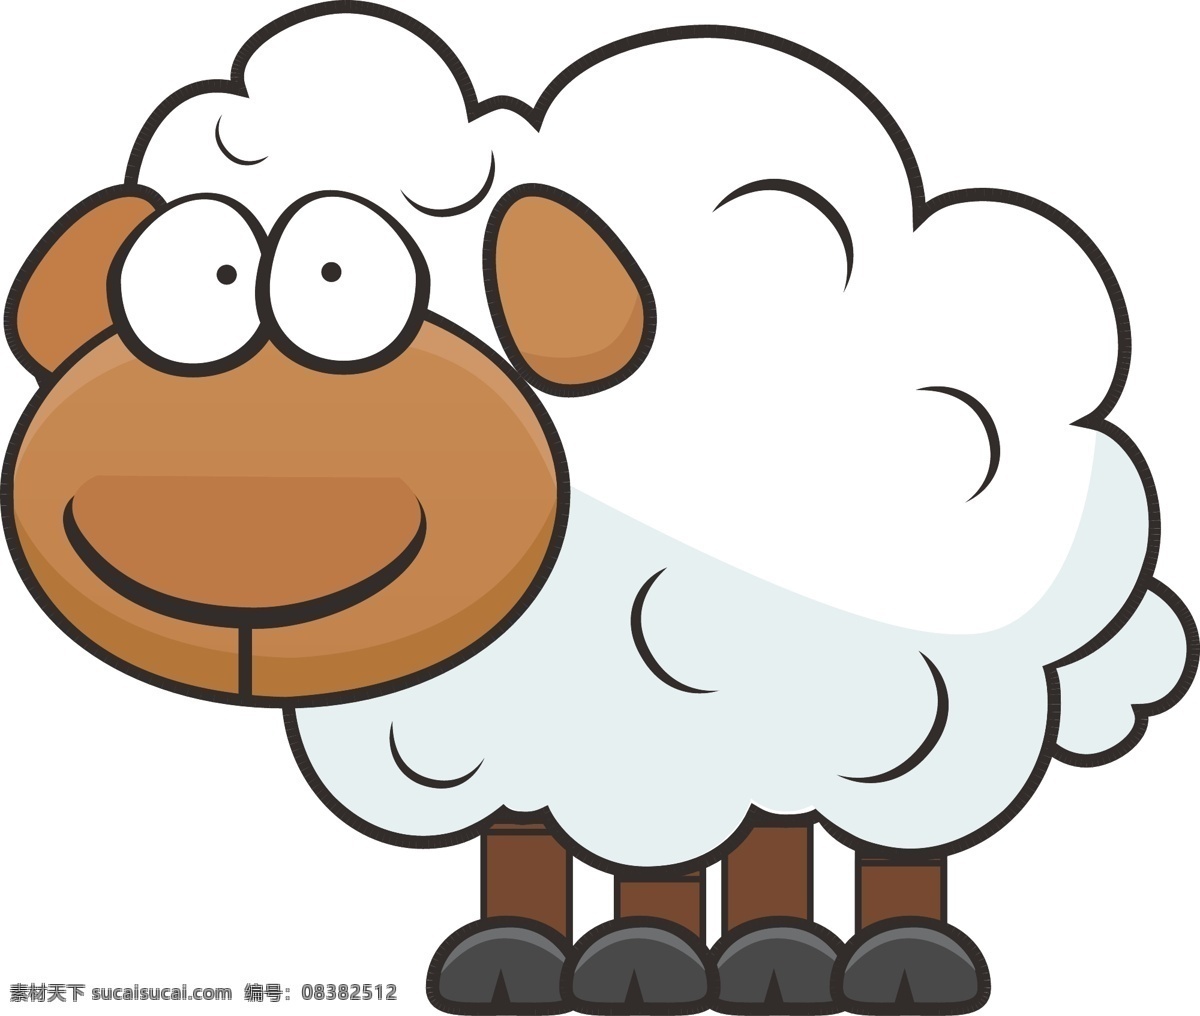 2015 羊年 2015动物 羊剪影 剪影 绵羊 手绘 羊年设计元素 矢量羊 ai矢量 卡通小绵羊 卡通小羊 卡通羊 羊年素材 卡通动物 卡通形象 可爱动物 拟人化 矢量动物 矢量 动漫动画